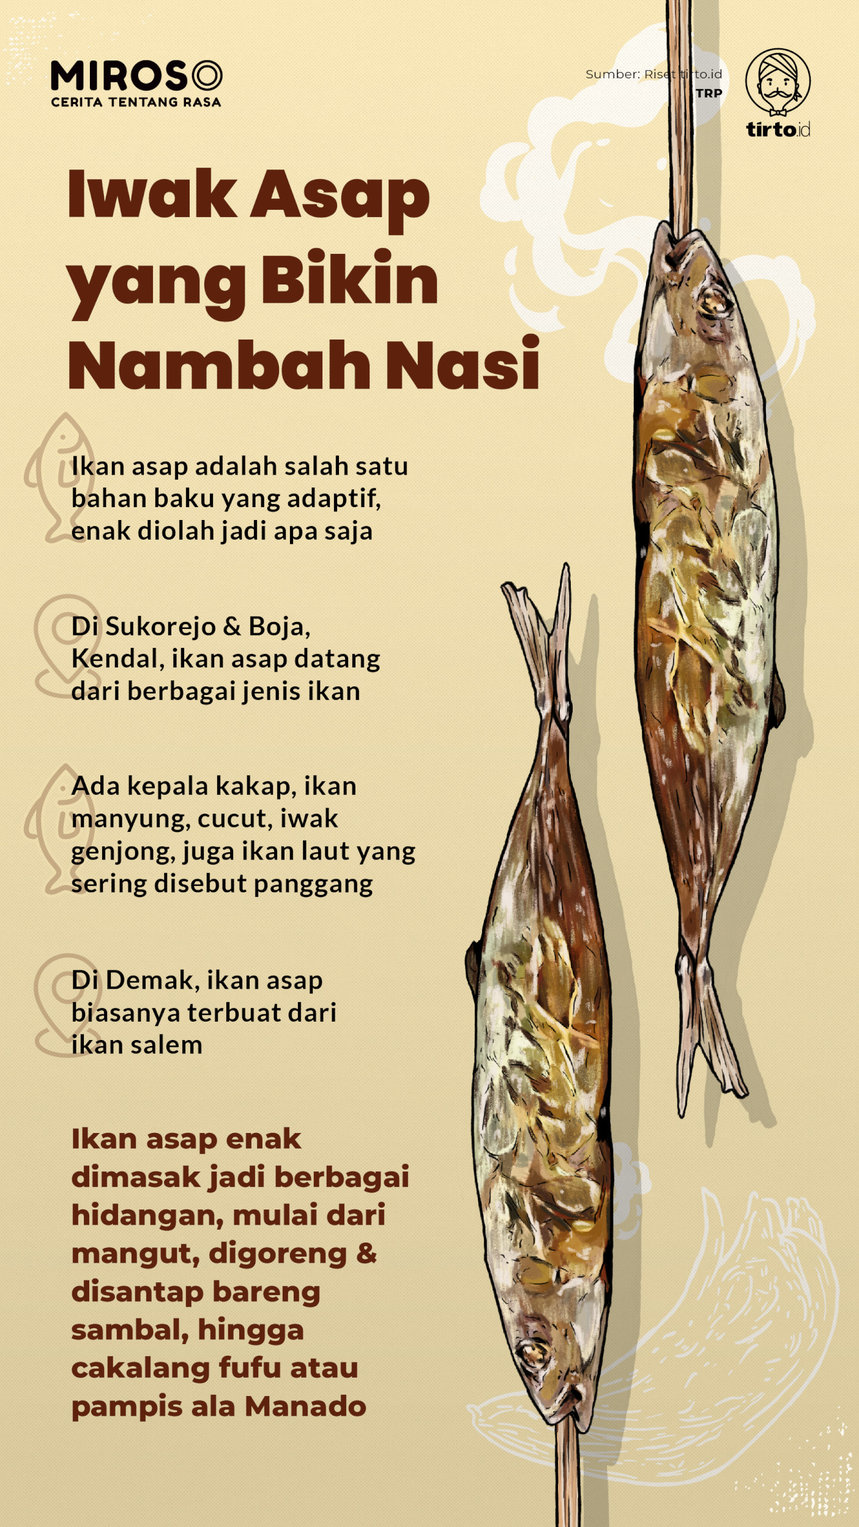 Infografik Miroso Iwak Asap yang bikin Nambah nasi